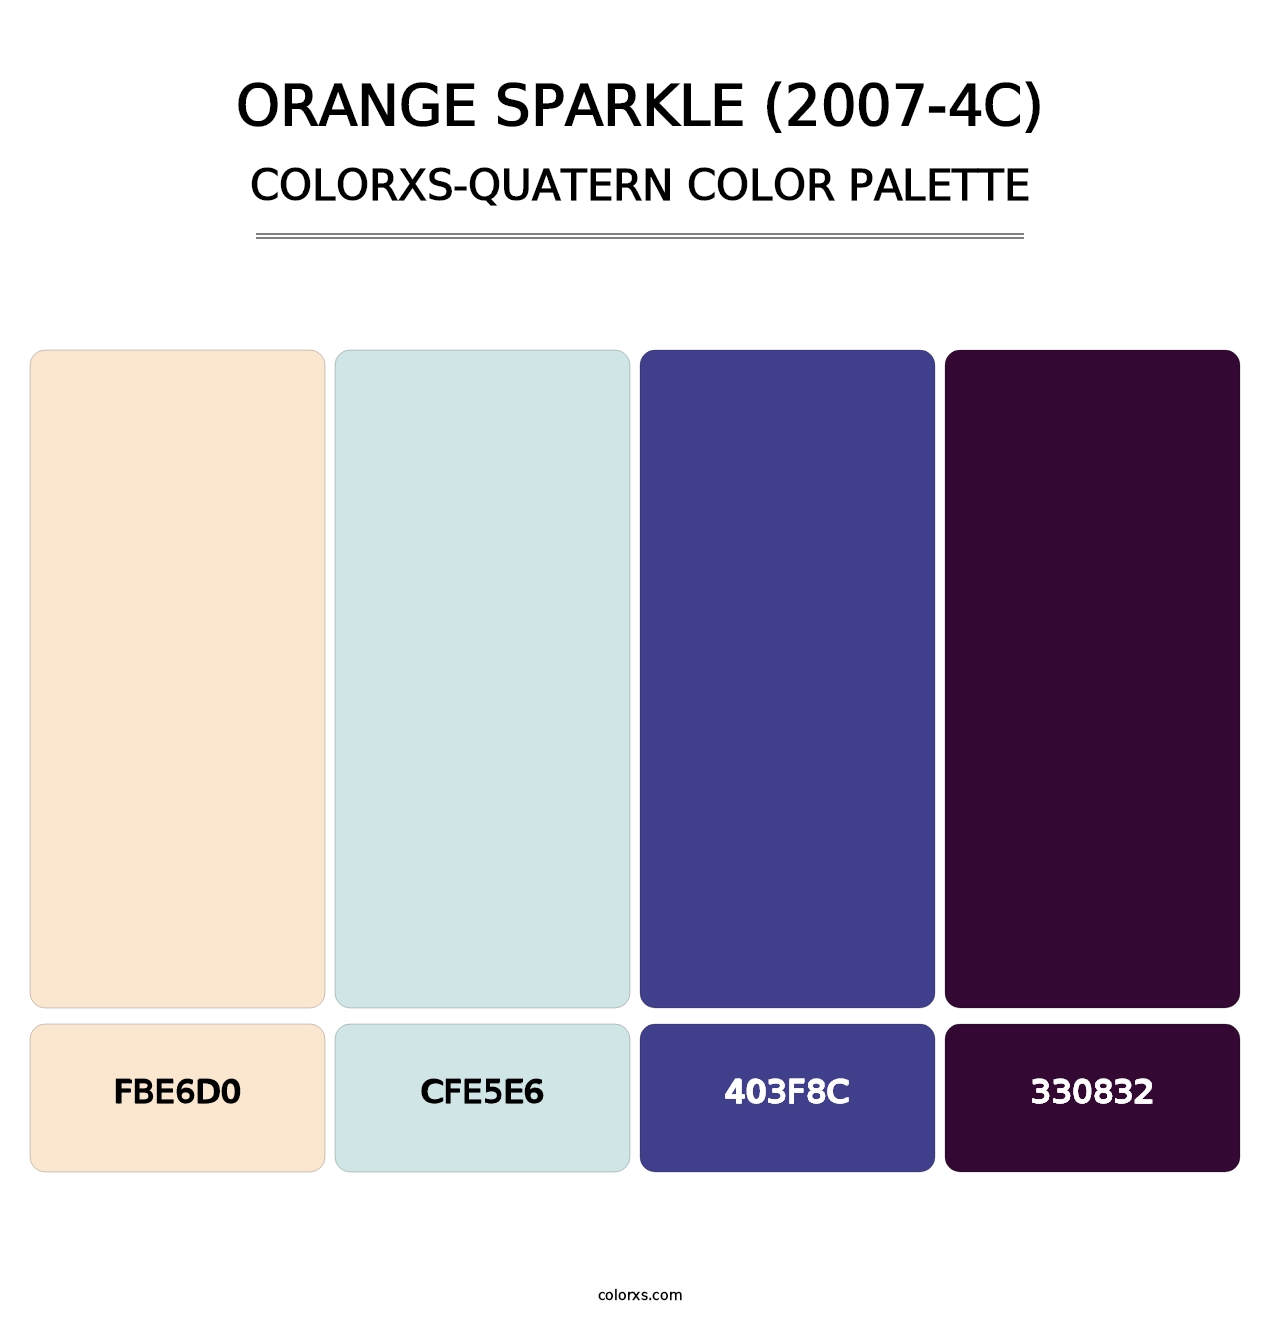 Orange Sparkle (2007-4C) - Colorxs Quatern Palette